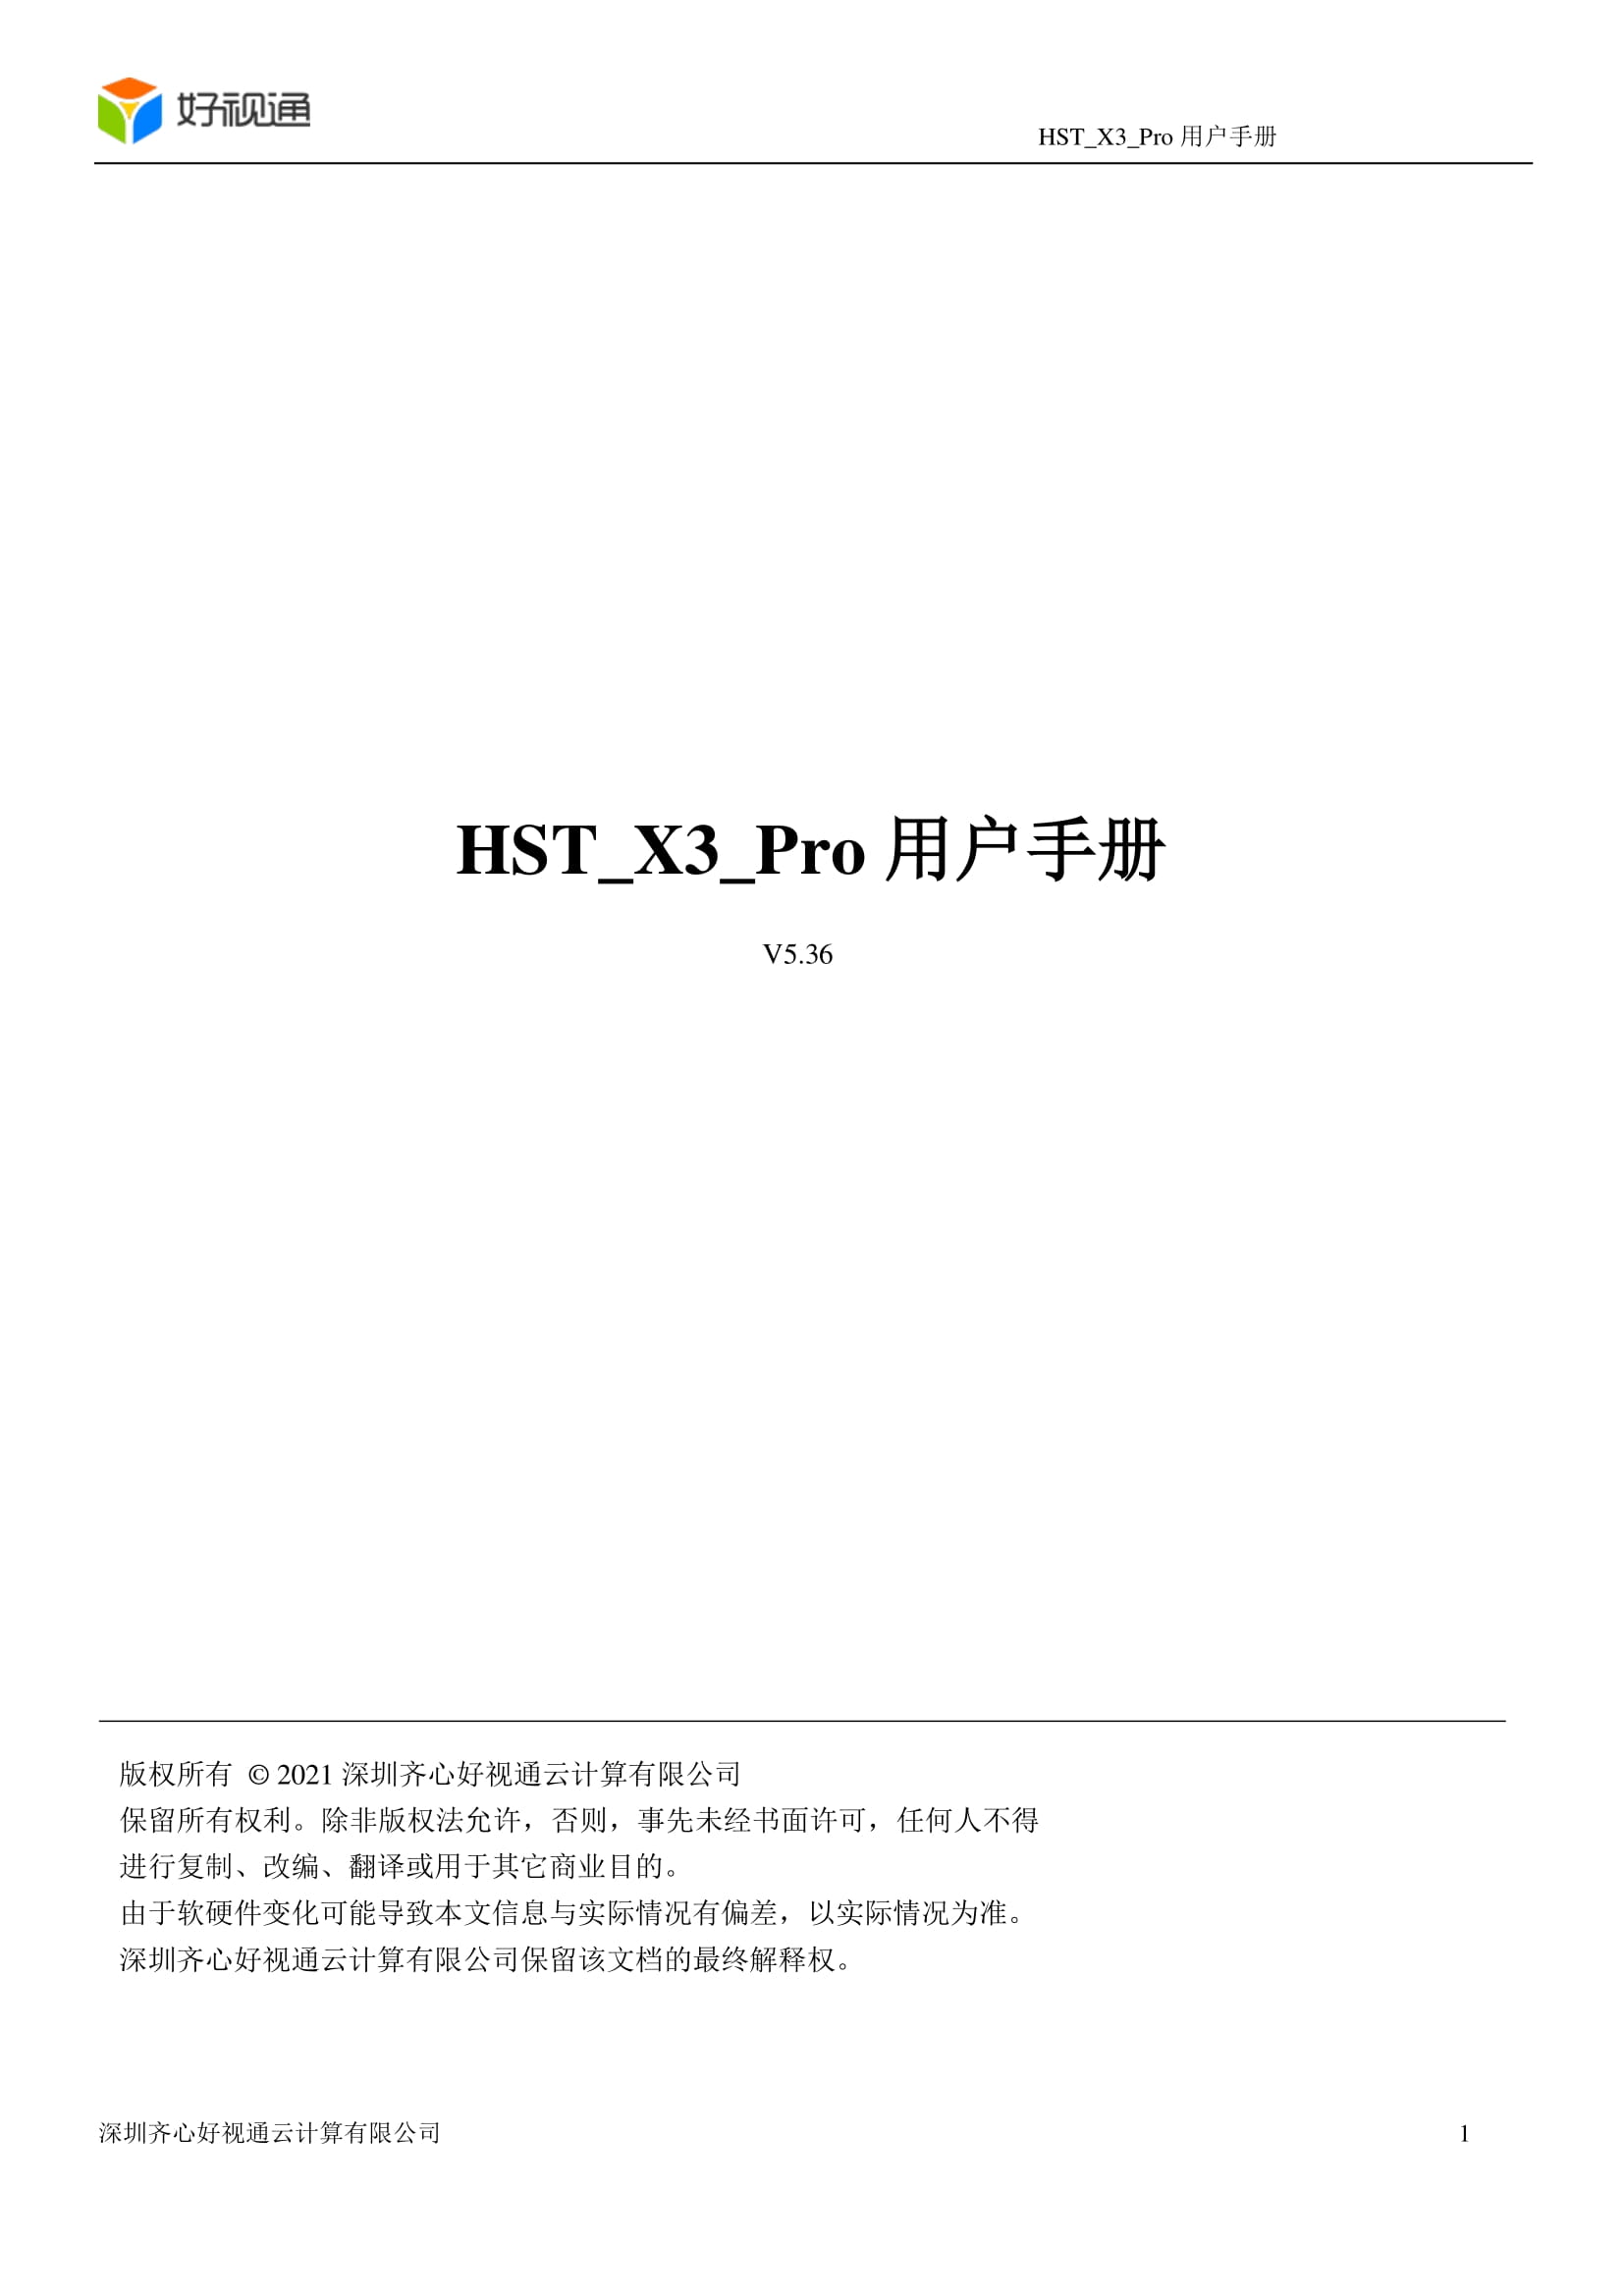 好视通硬件终端HST-X3 Pro操作手册-嘤嘤怪后花园